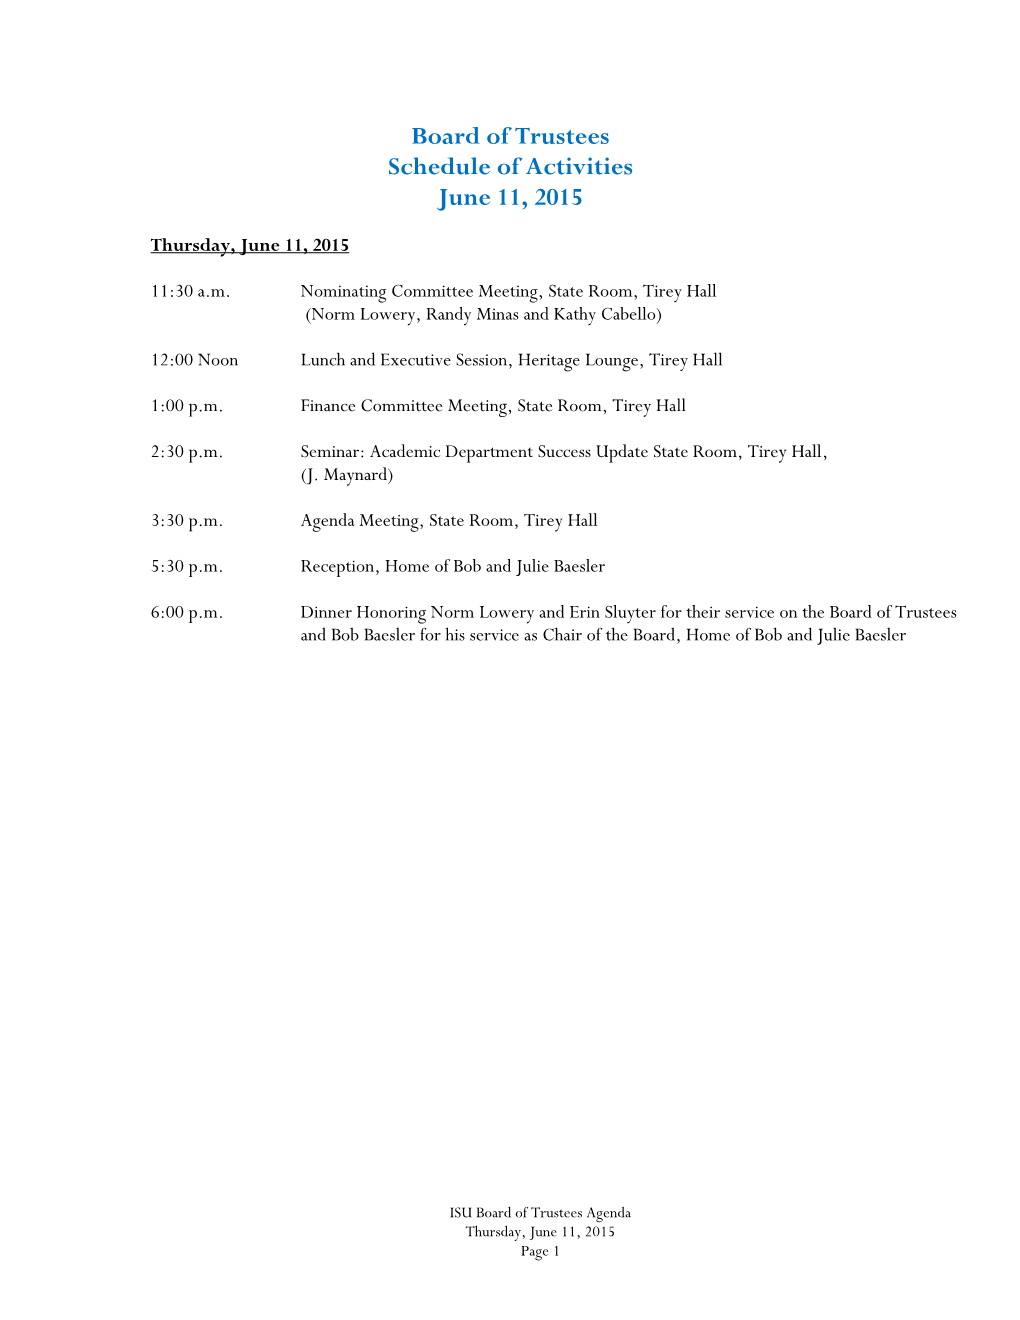 Board of Trustees Schedule of Activities June 11, 2015